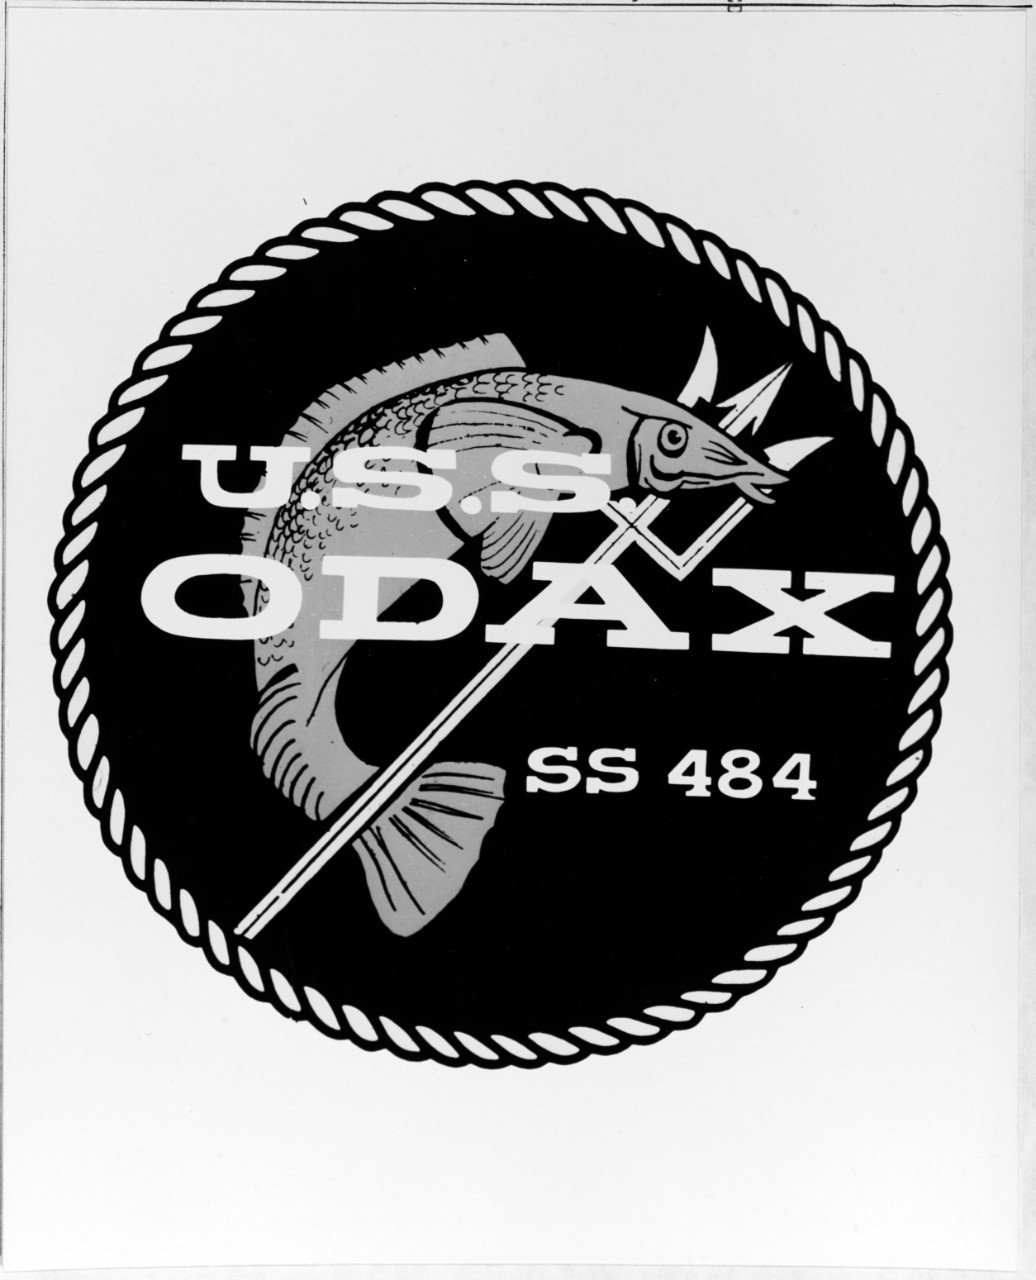 Insignia: USS ODAX (SS-484)